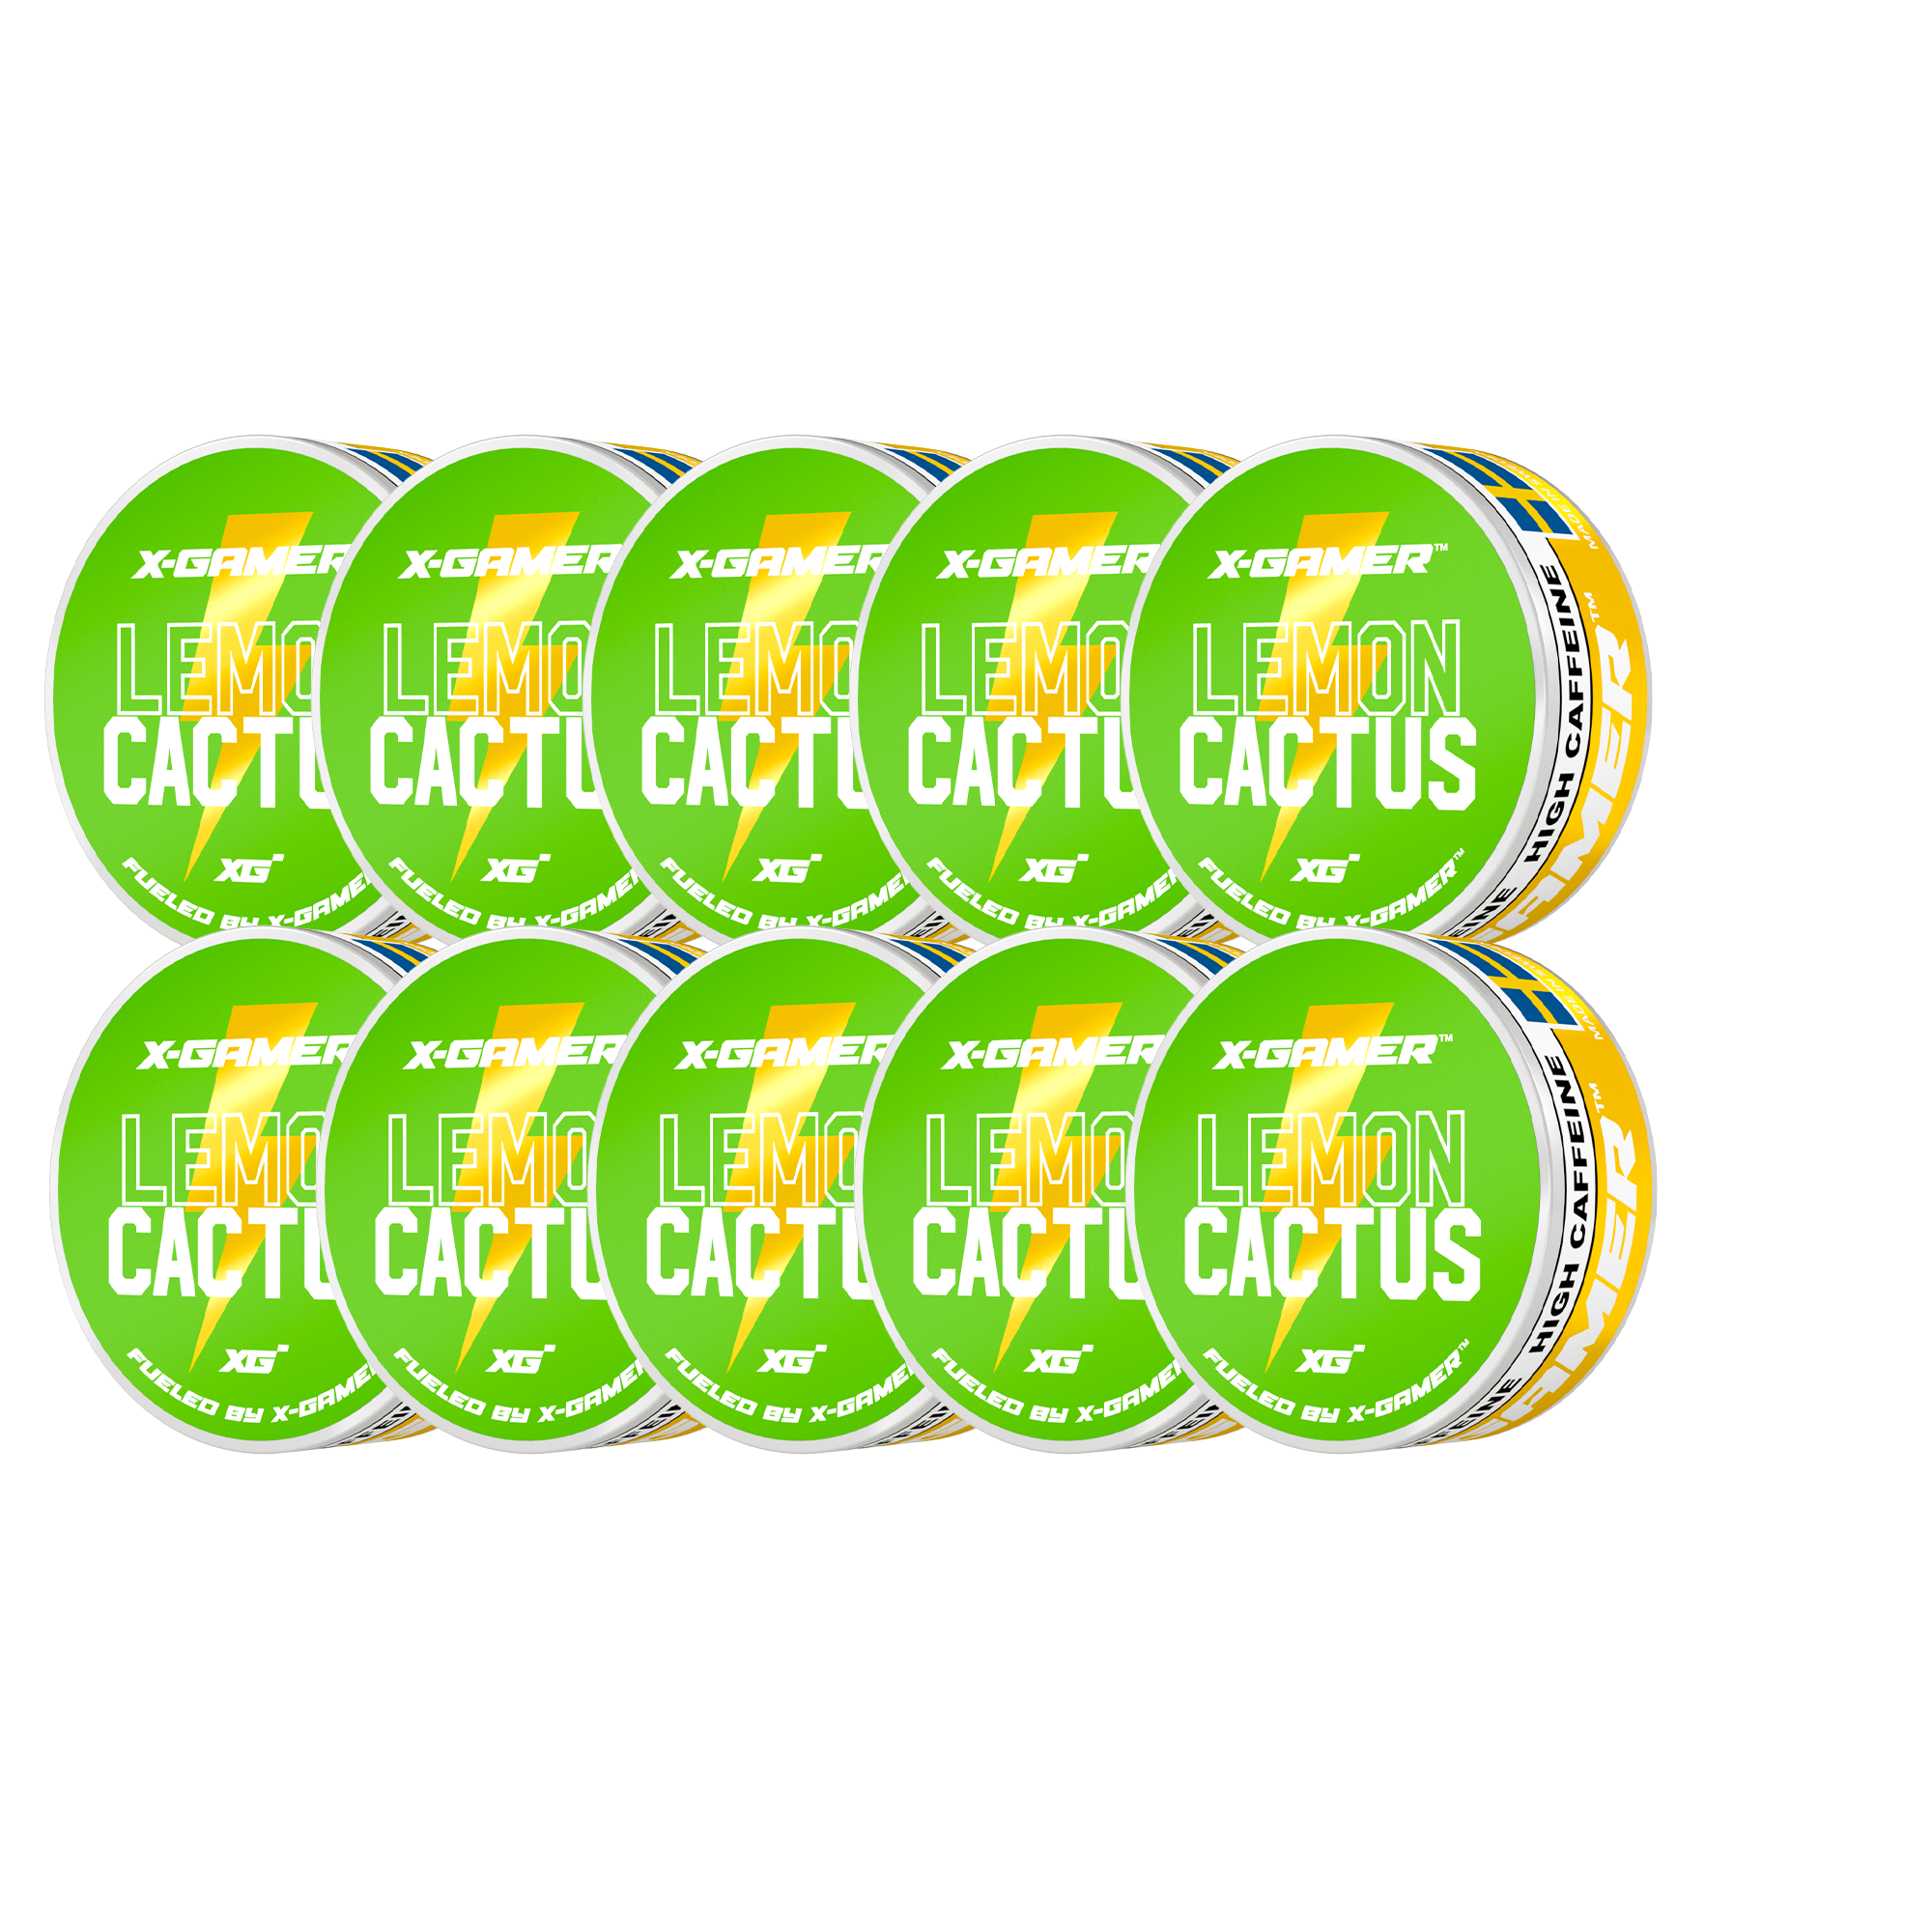 Lemon Cactus Energy Pouches (10 Pack/200 Pouches)